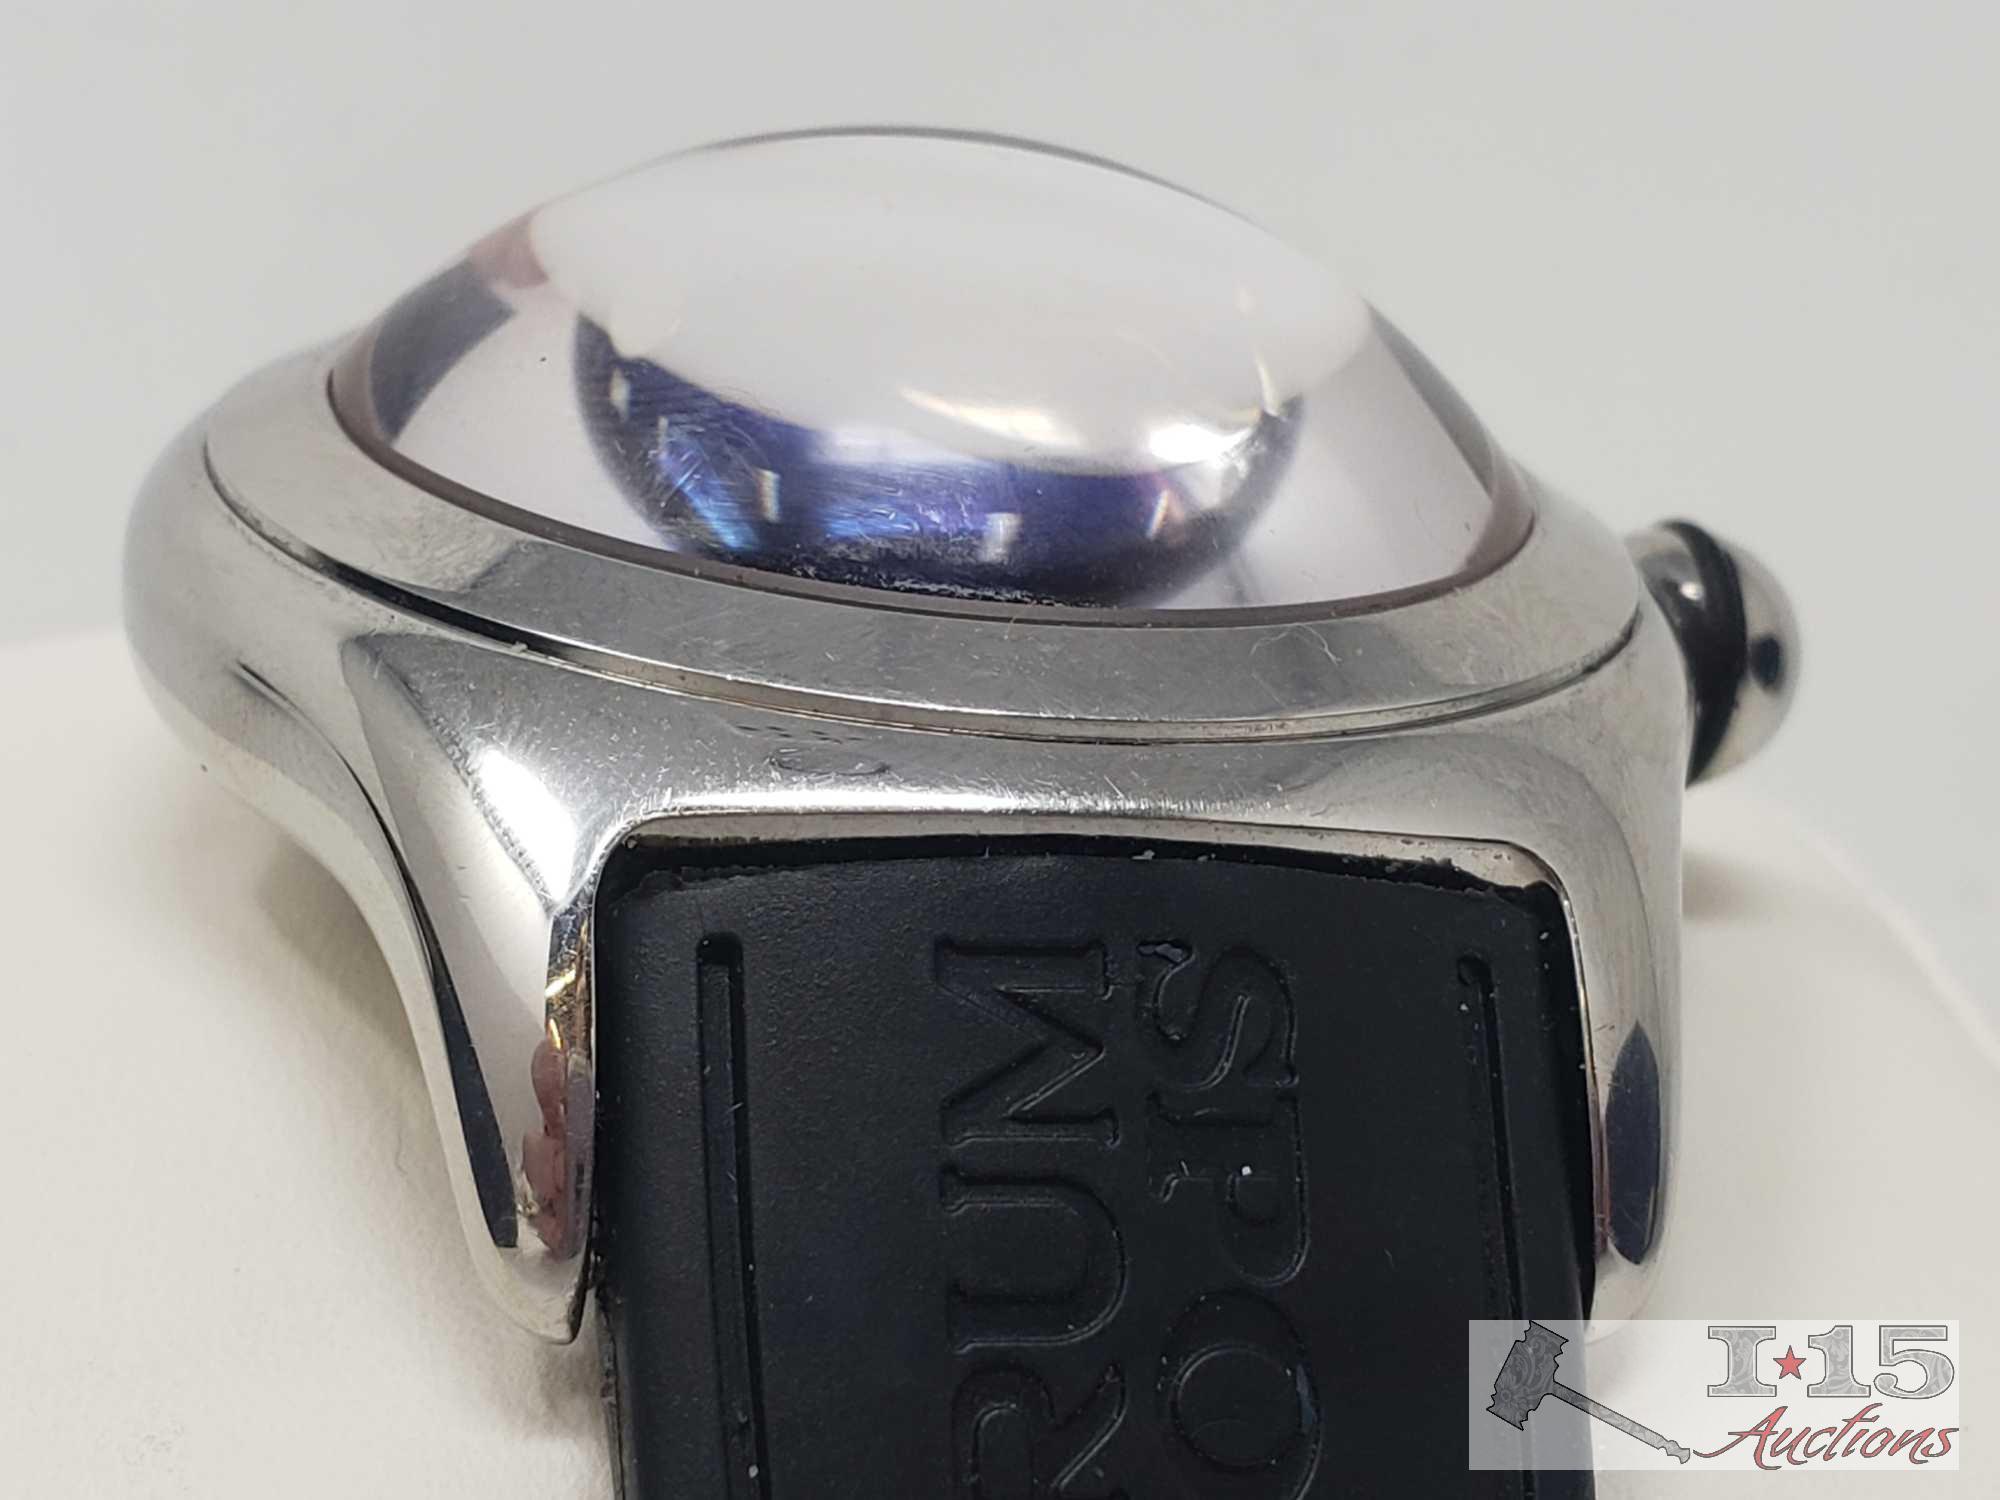 Corum Boutique Bubble Watch, Model 163.150.20